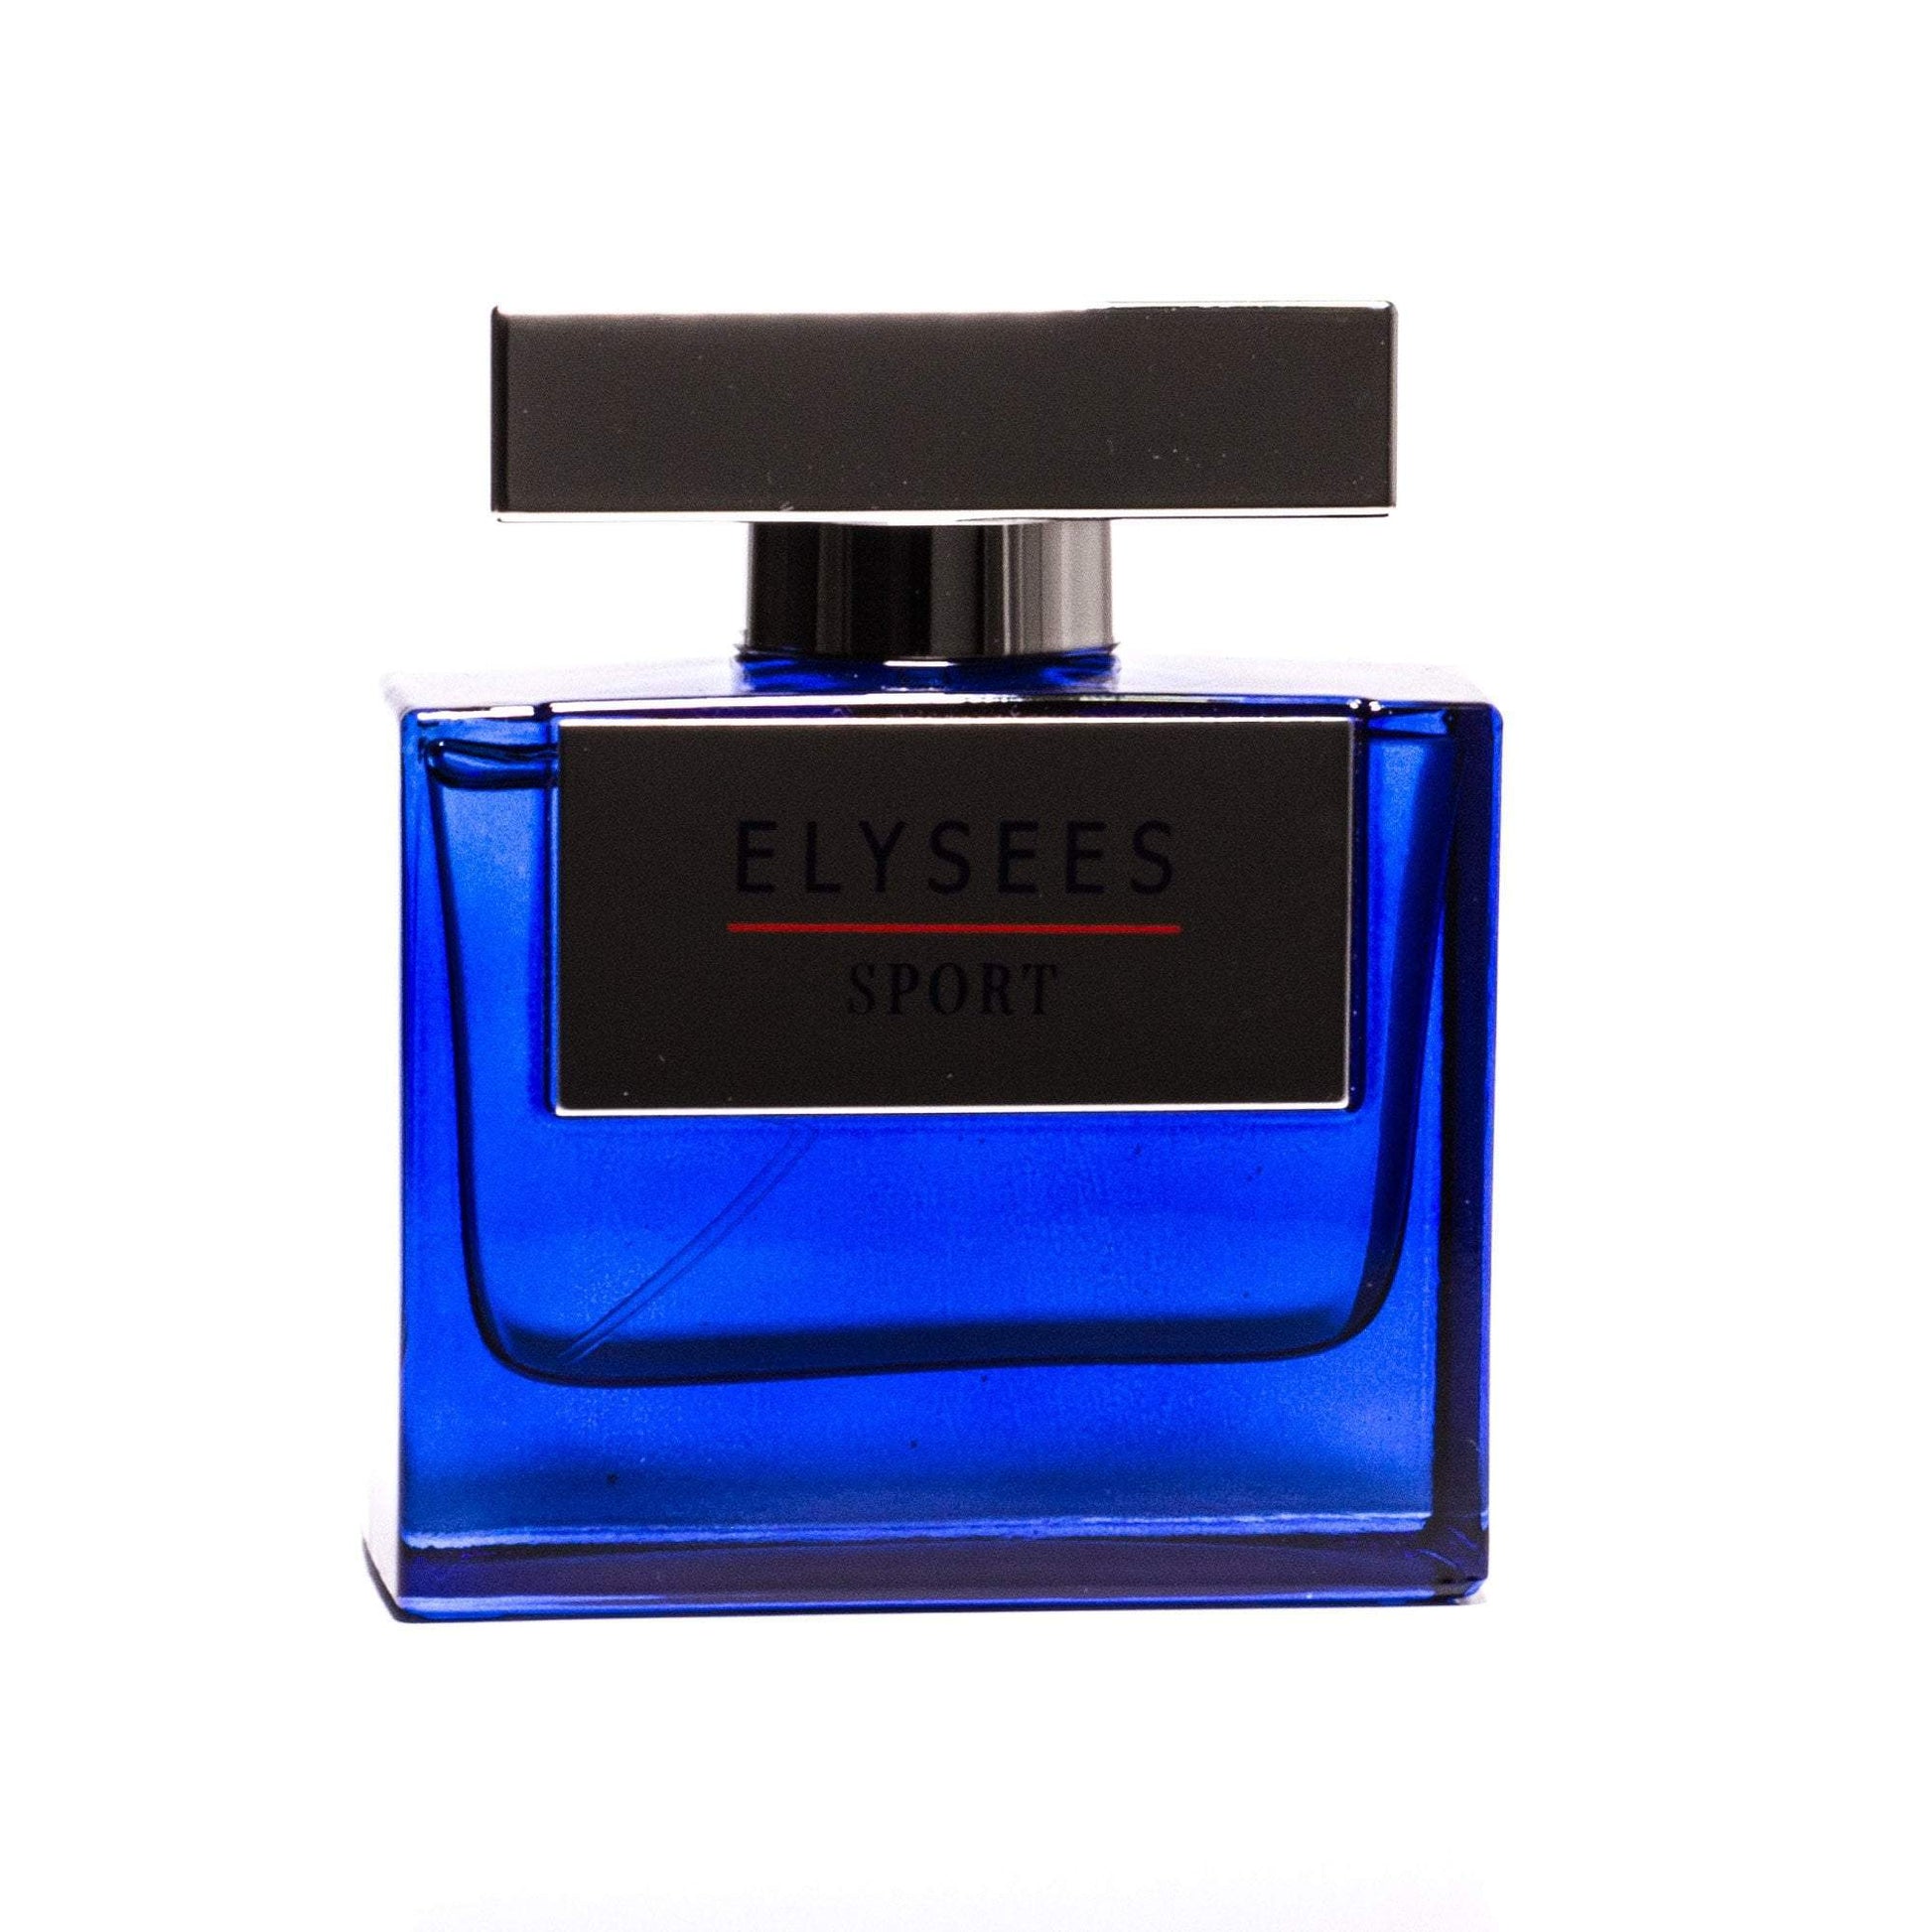 Elysees Sport Eau de Parfum Spray for Men, Product image 2